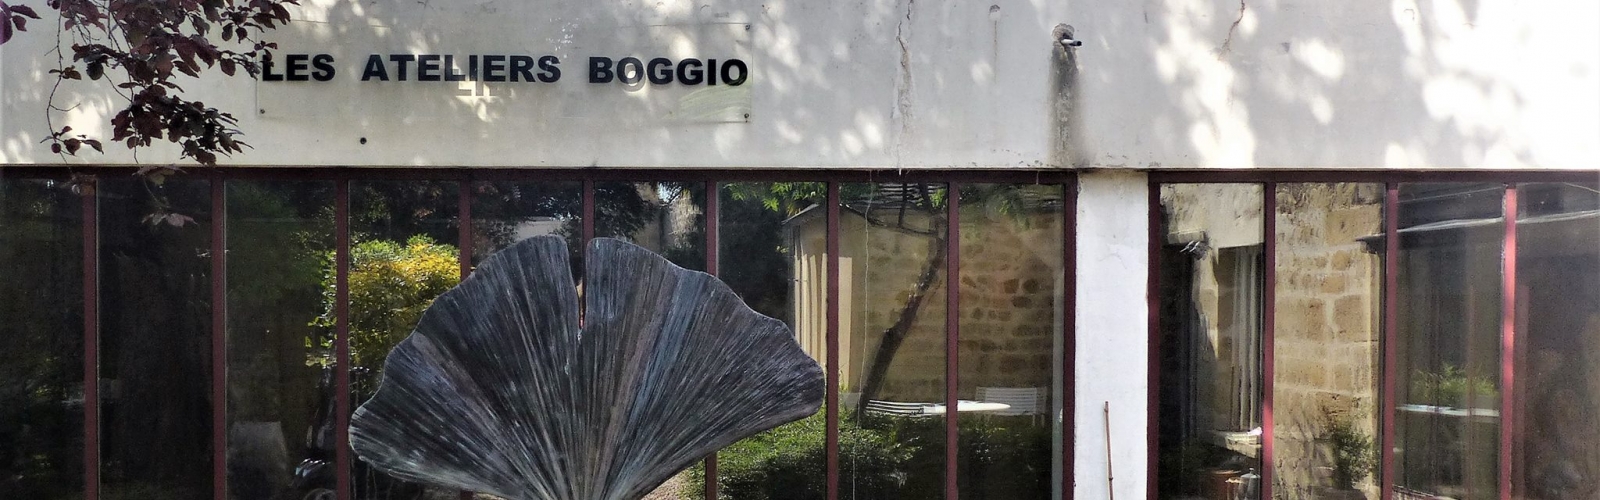 Les Ateliers Boggio